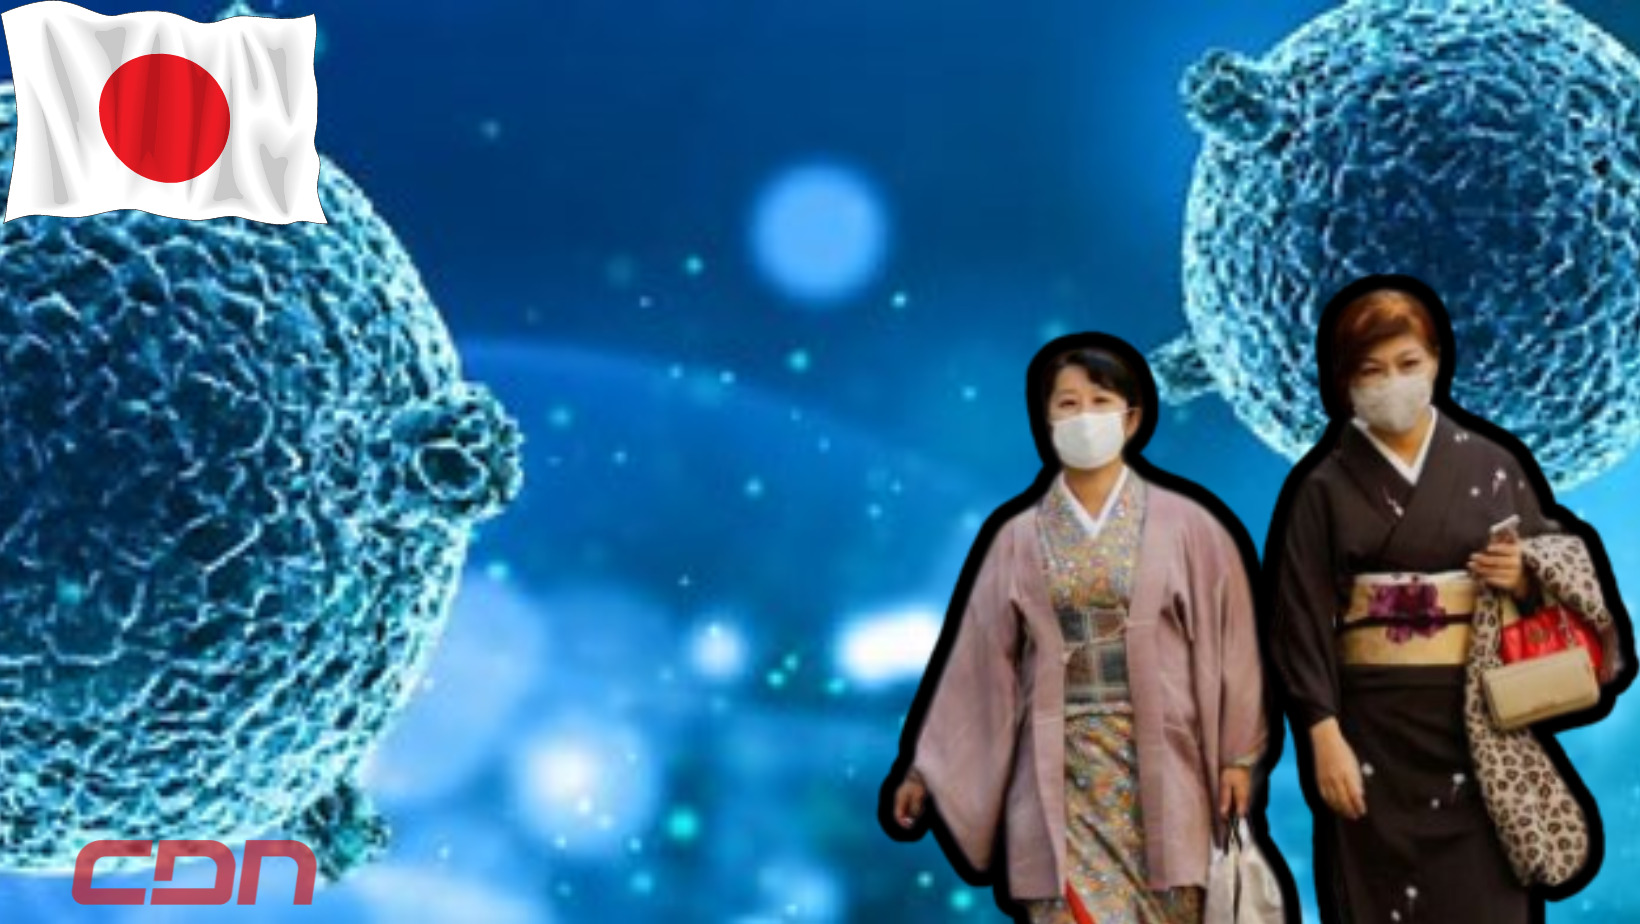 Japoneses se protegen de la "enfermedad carnívora". Foto: CDN Digital